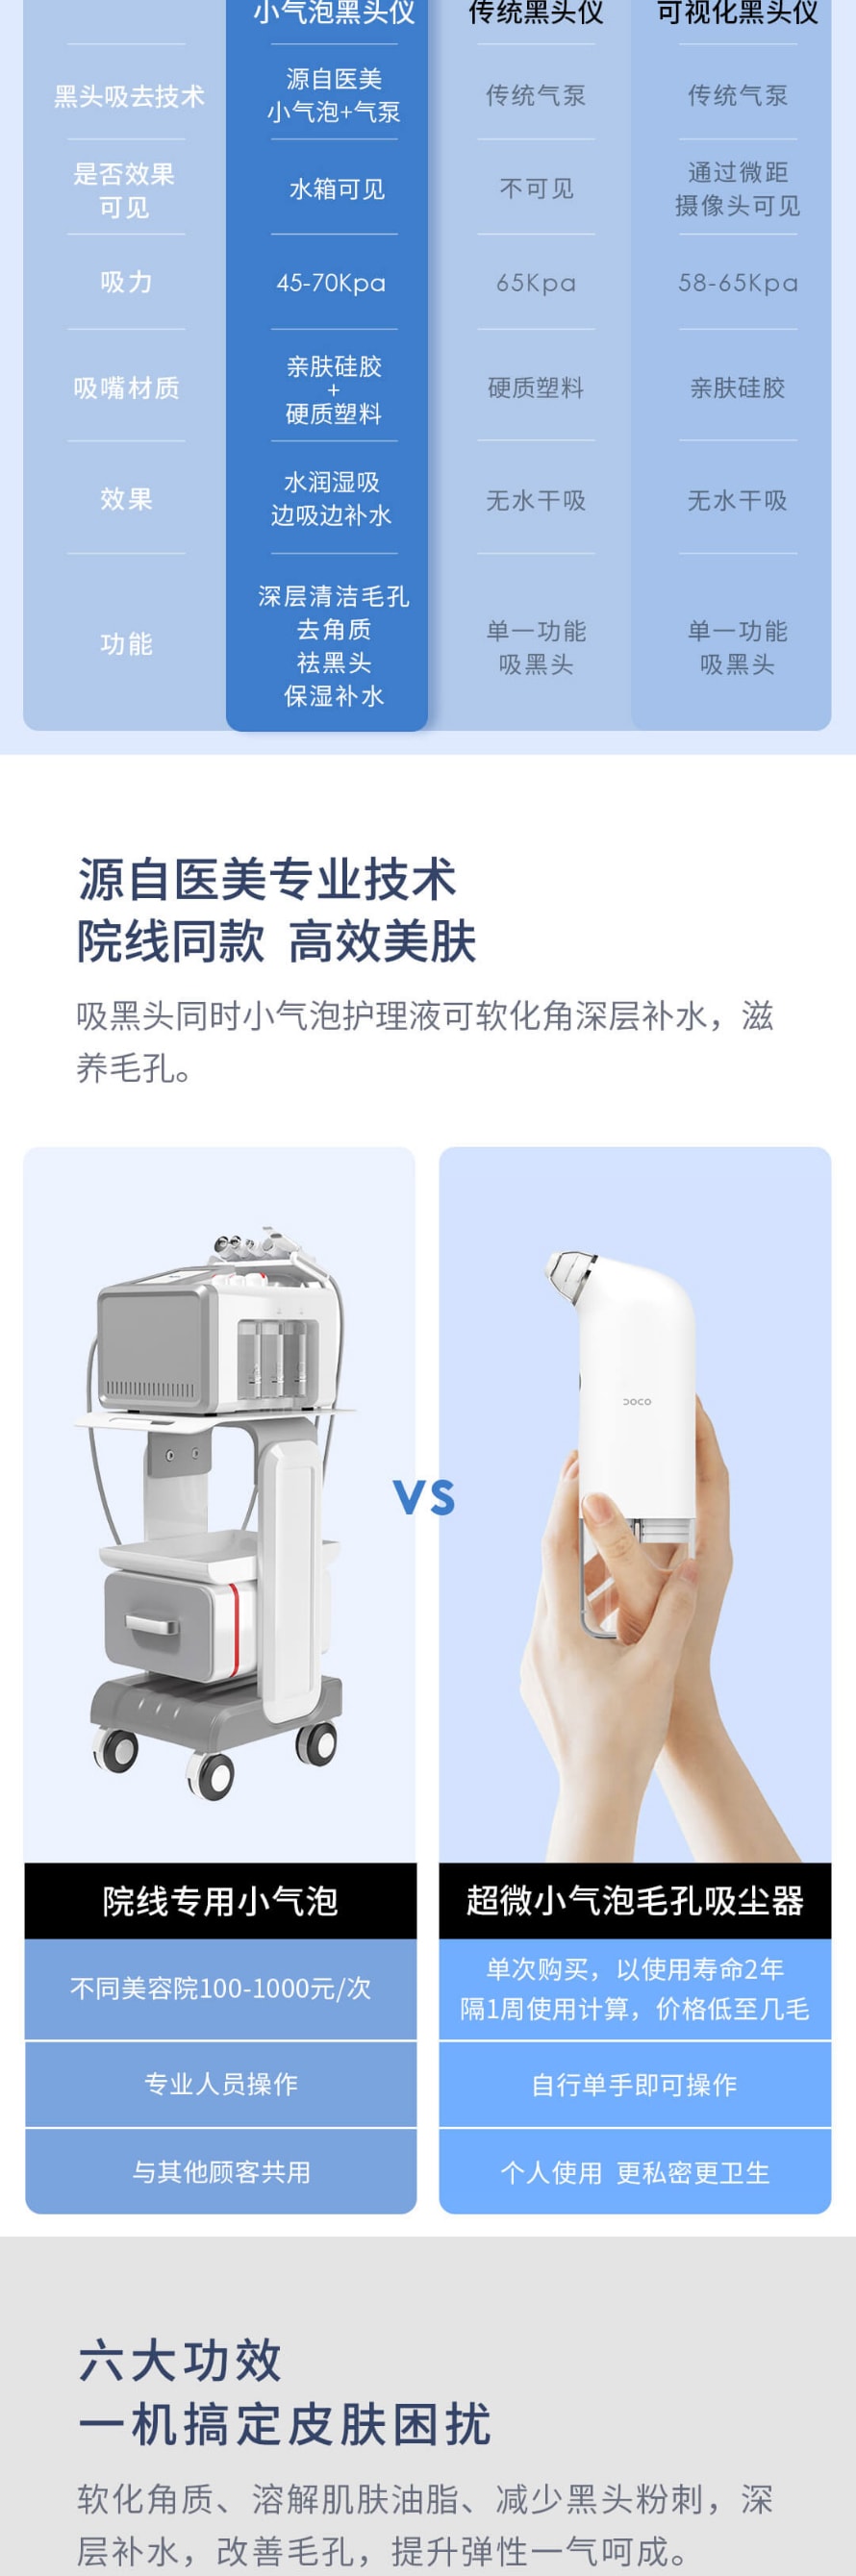 【中國直郵】小米有品 DOCO 超微小氣泡毛孔吸塵器黑頭儀 一機+護理液1